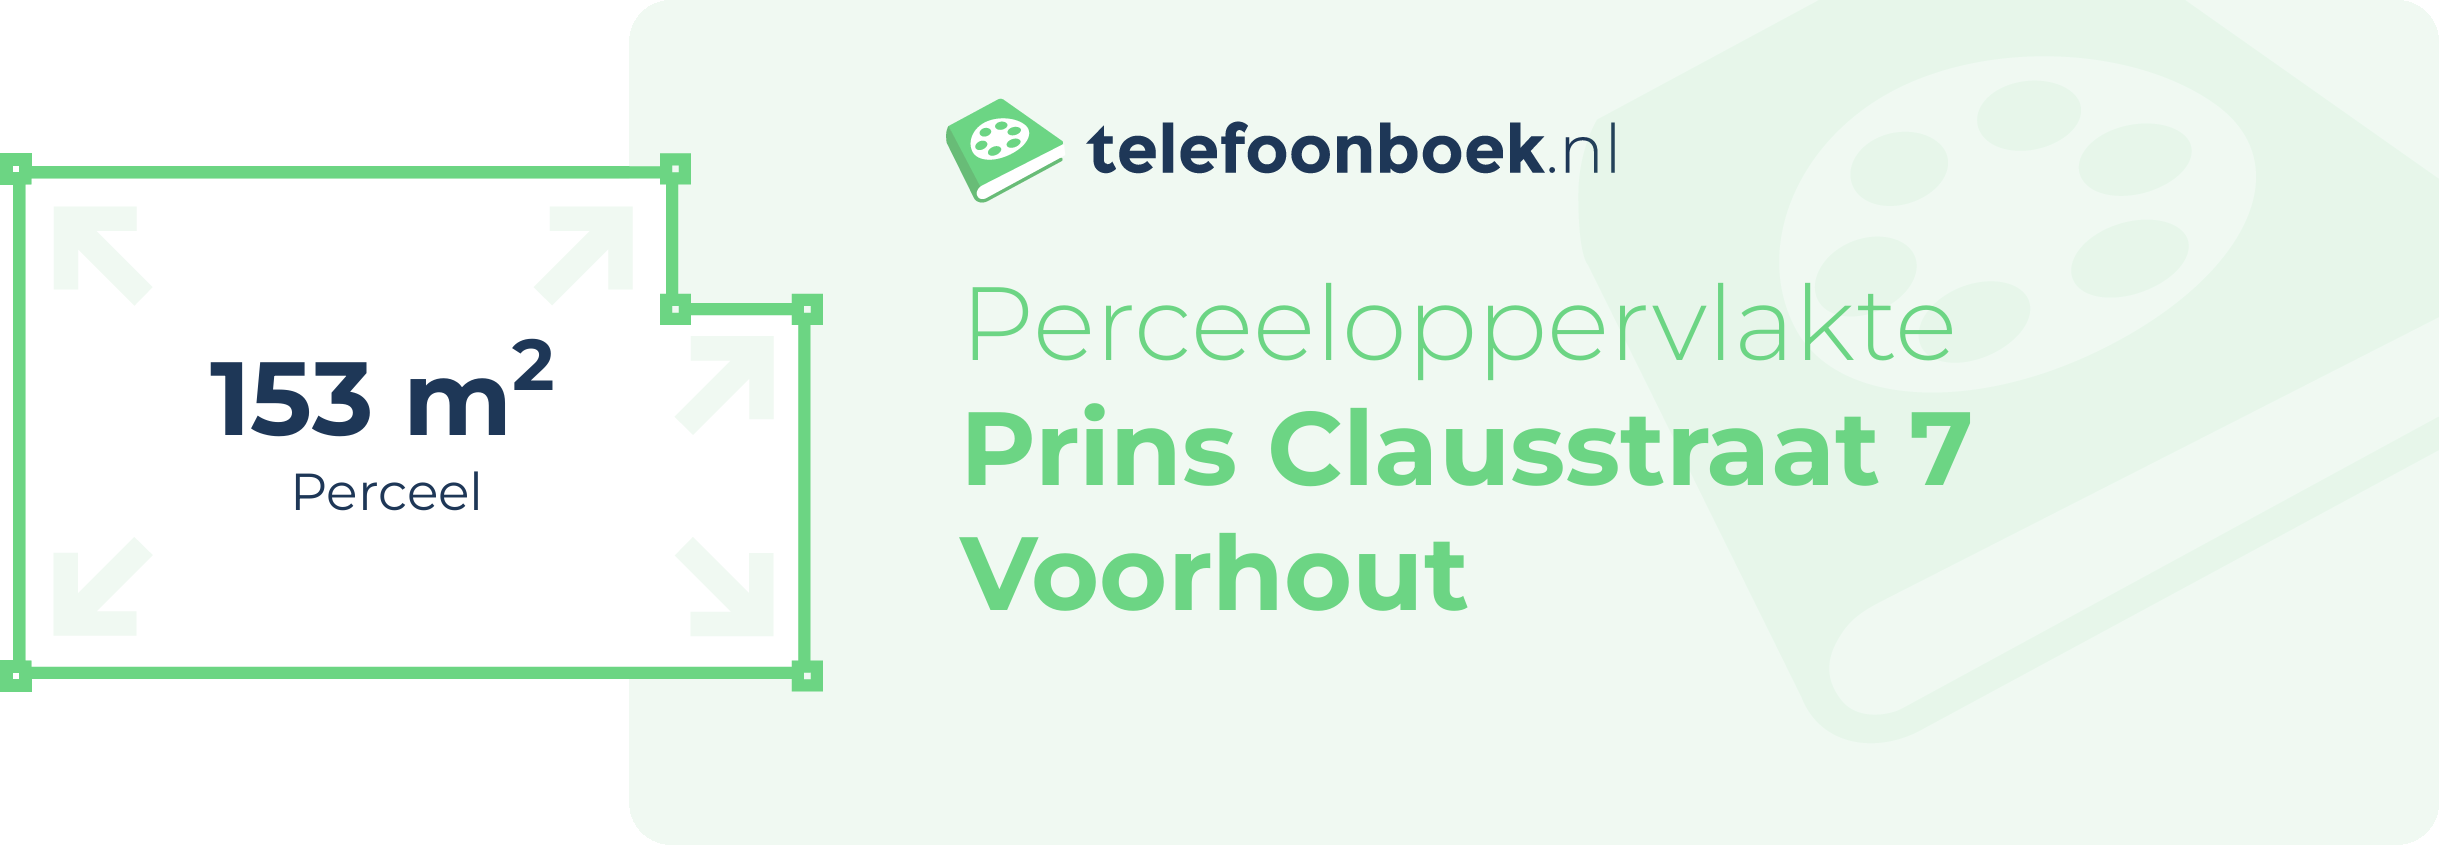 Perceeloppervlakte Prins Clausstraat 7 Voorhout